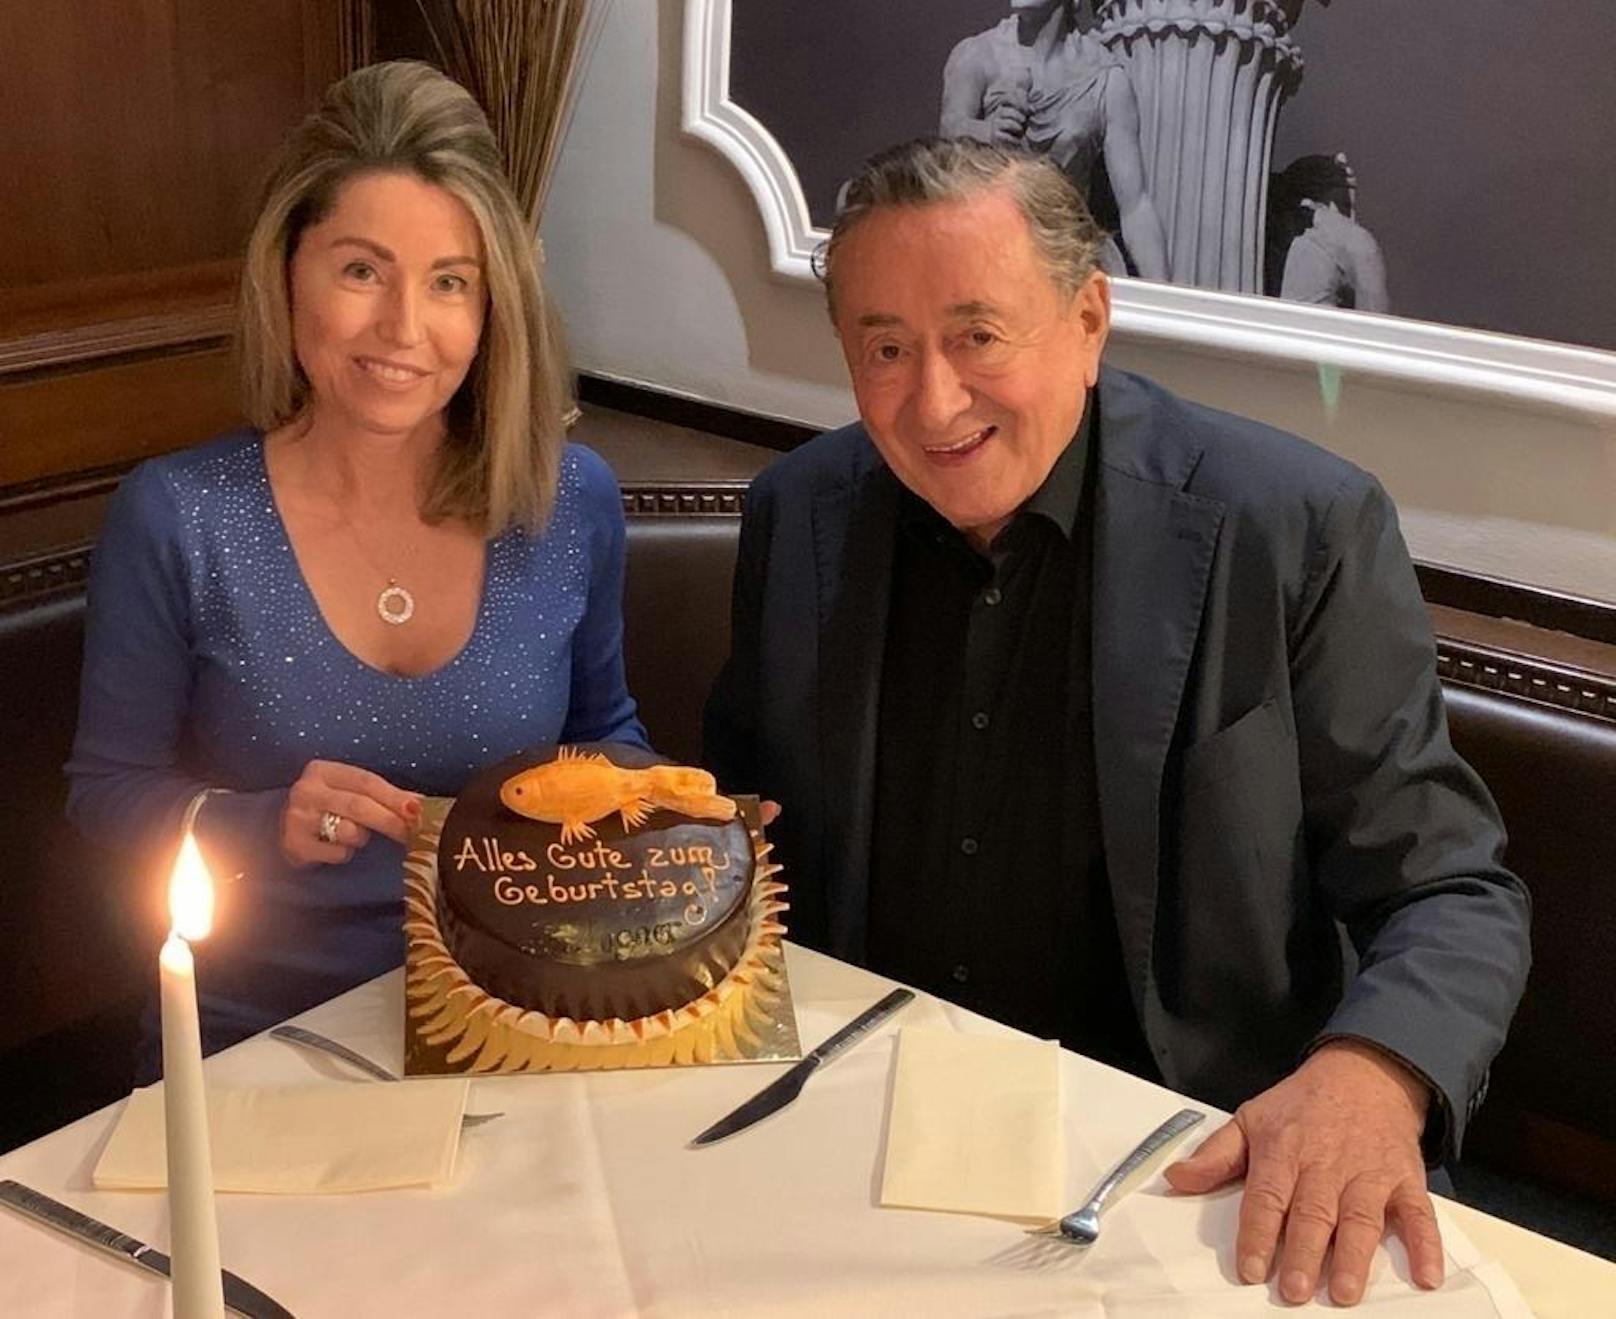 Andrea "Goldfisch" feiert mit Richard Lugner ihren Geburtstag